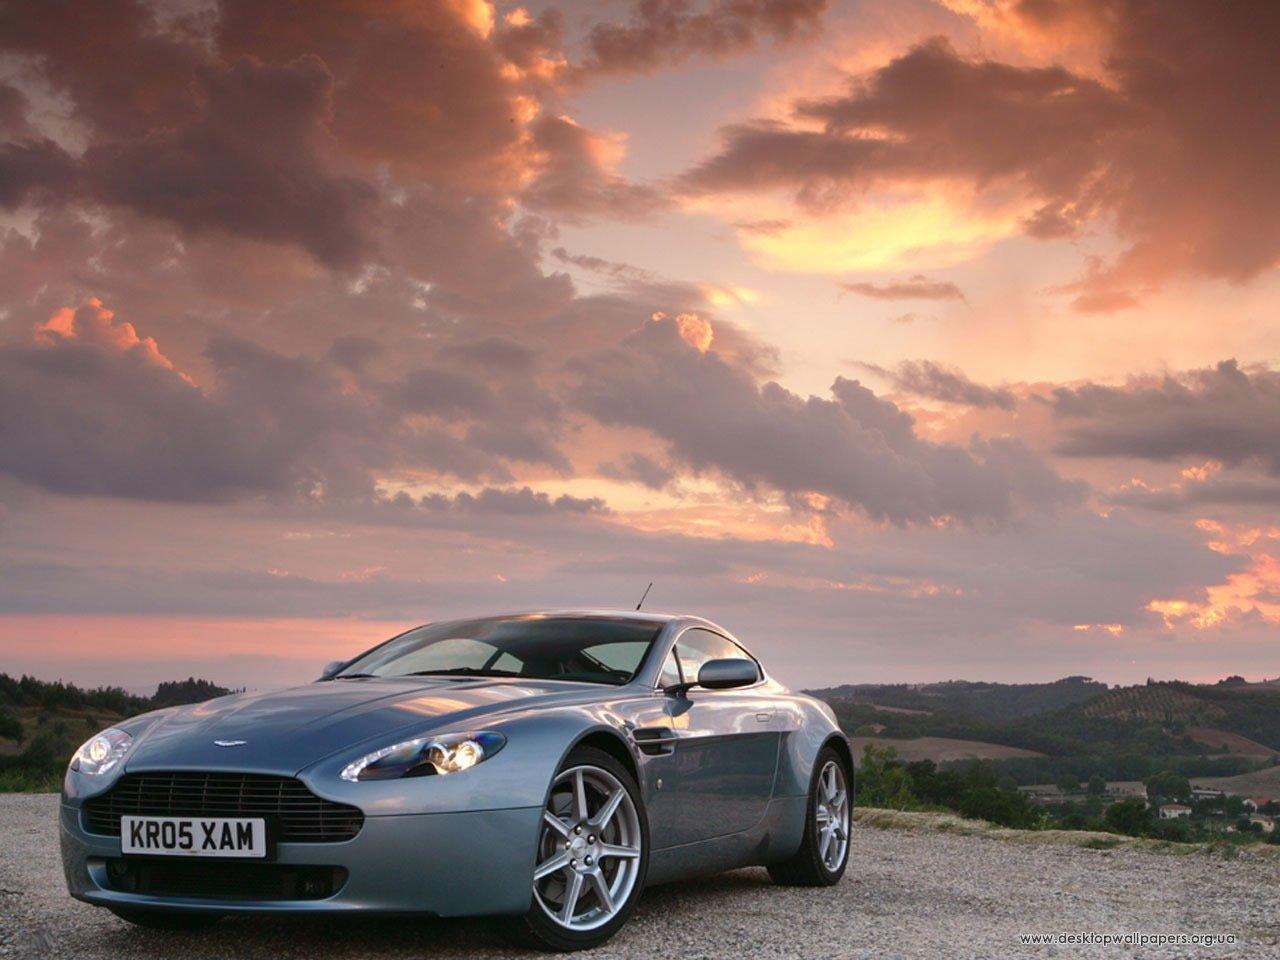 обои Aston martin на фоне заката фото